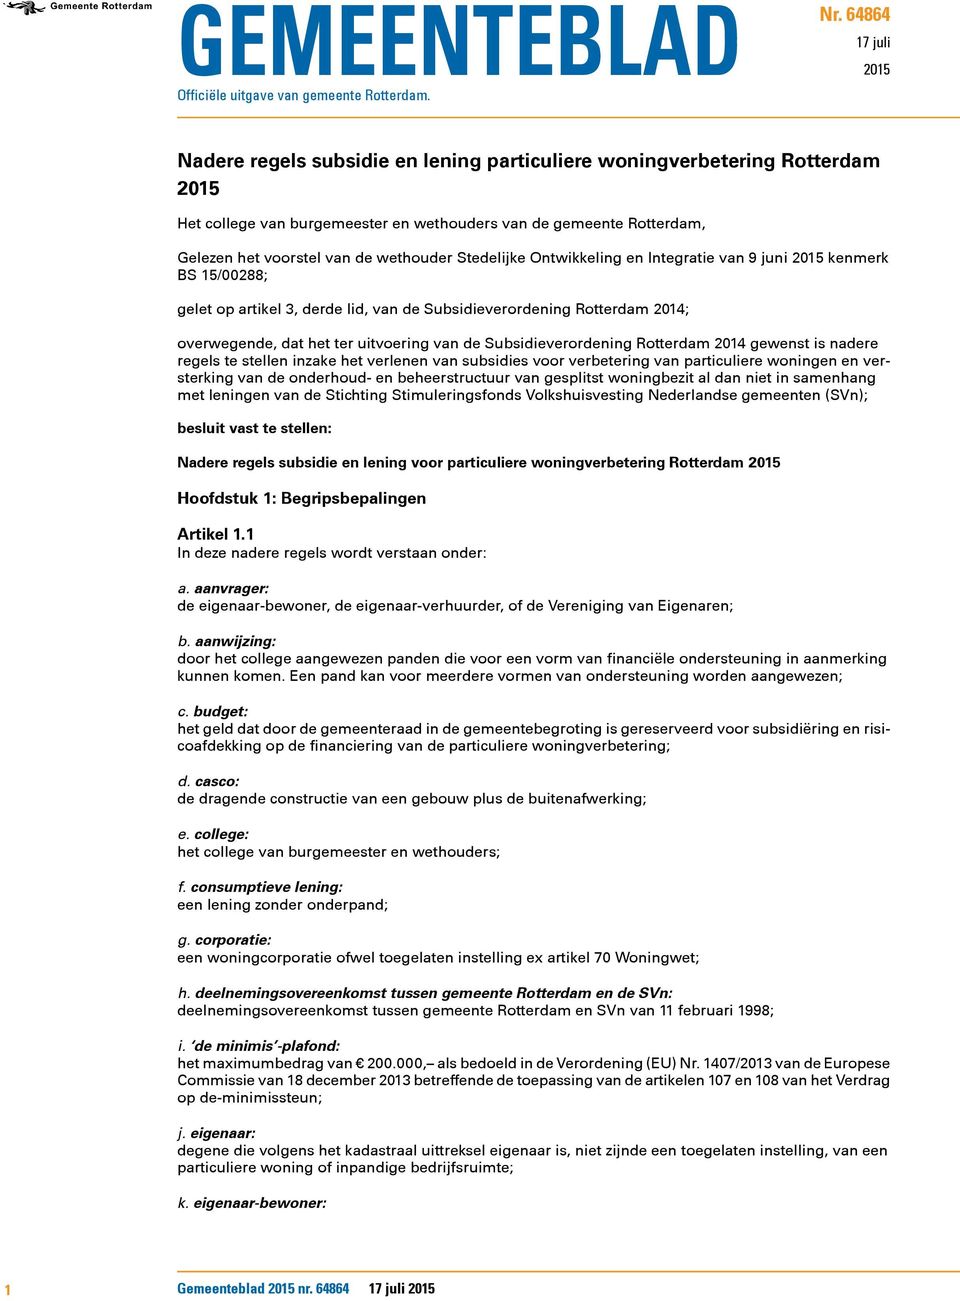 wethouder Stedelijke Ontwikkeling en Integratie van 9 juni 2015 kenmerk BS 15/00288; gelet op artikel 3, derde lid, van de Subsidieverordening Rotterdam 2014; overwegende, dat het ter uitvoering van